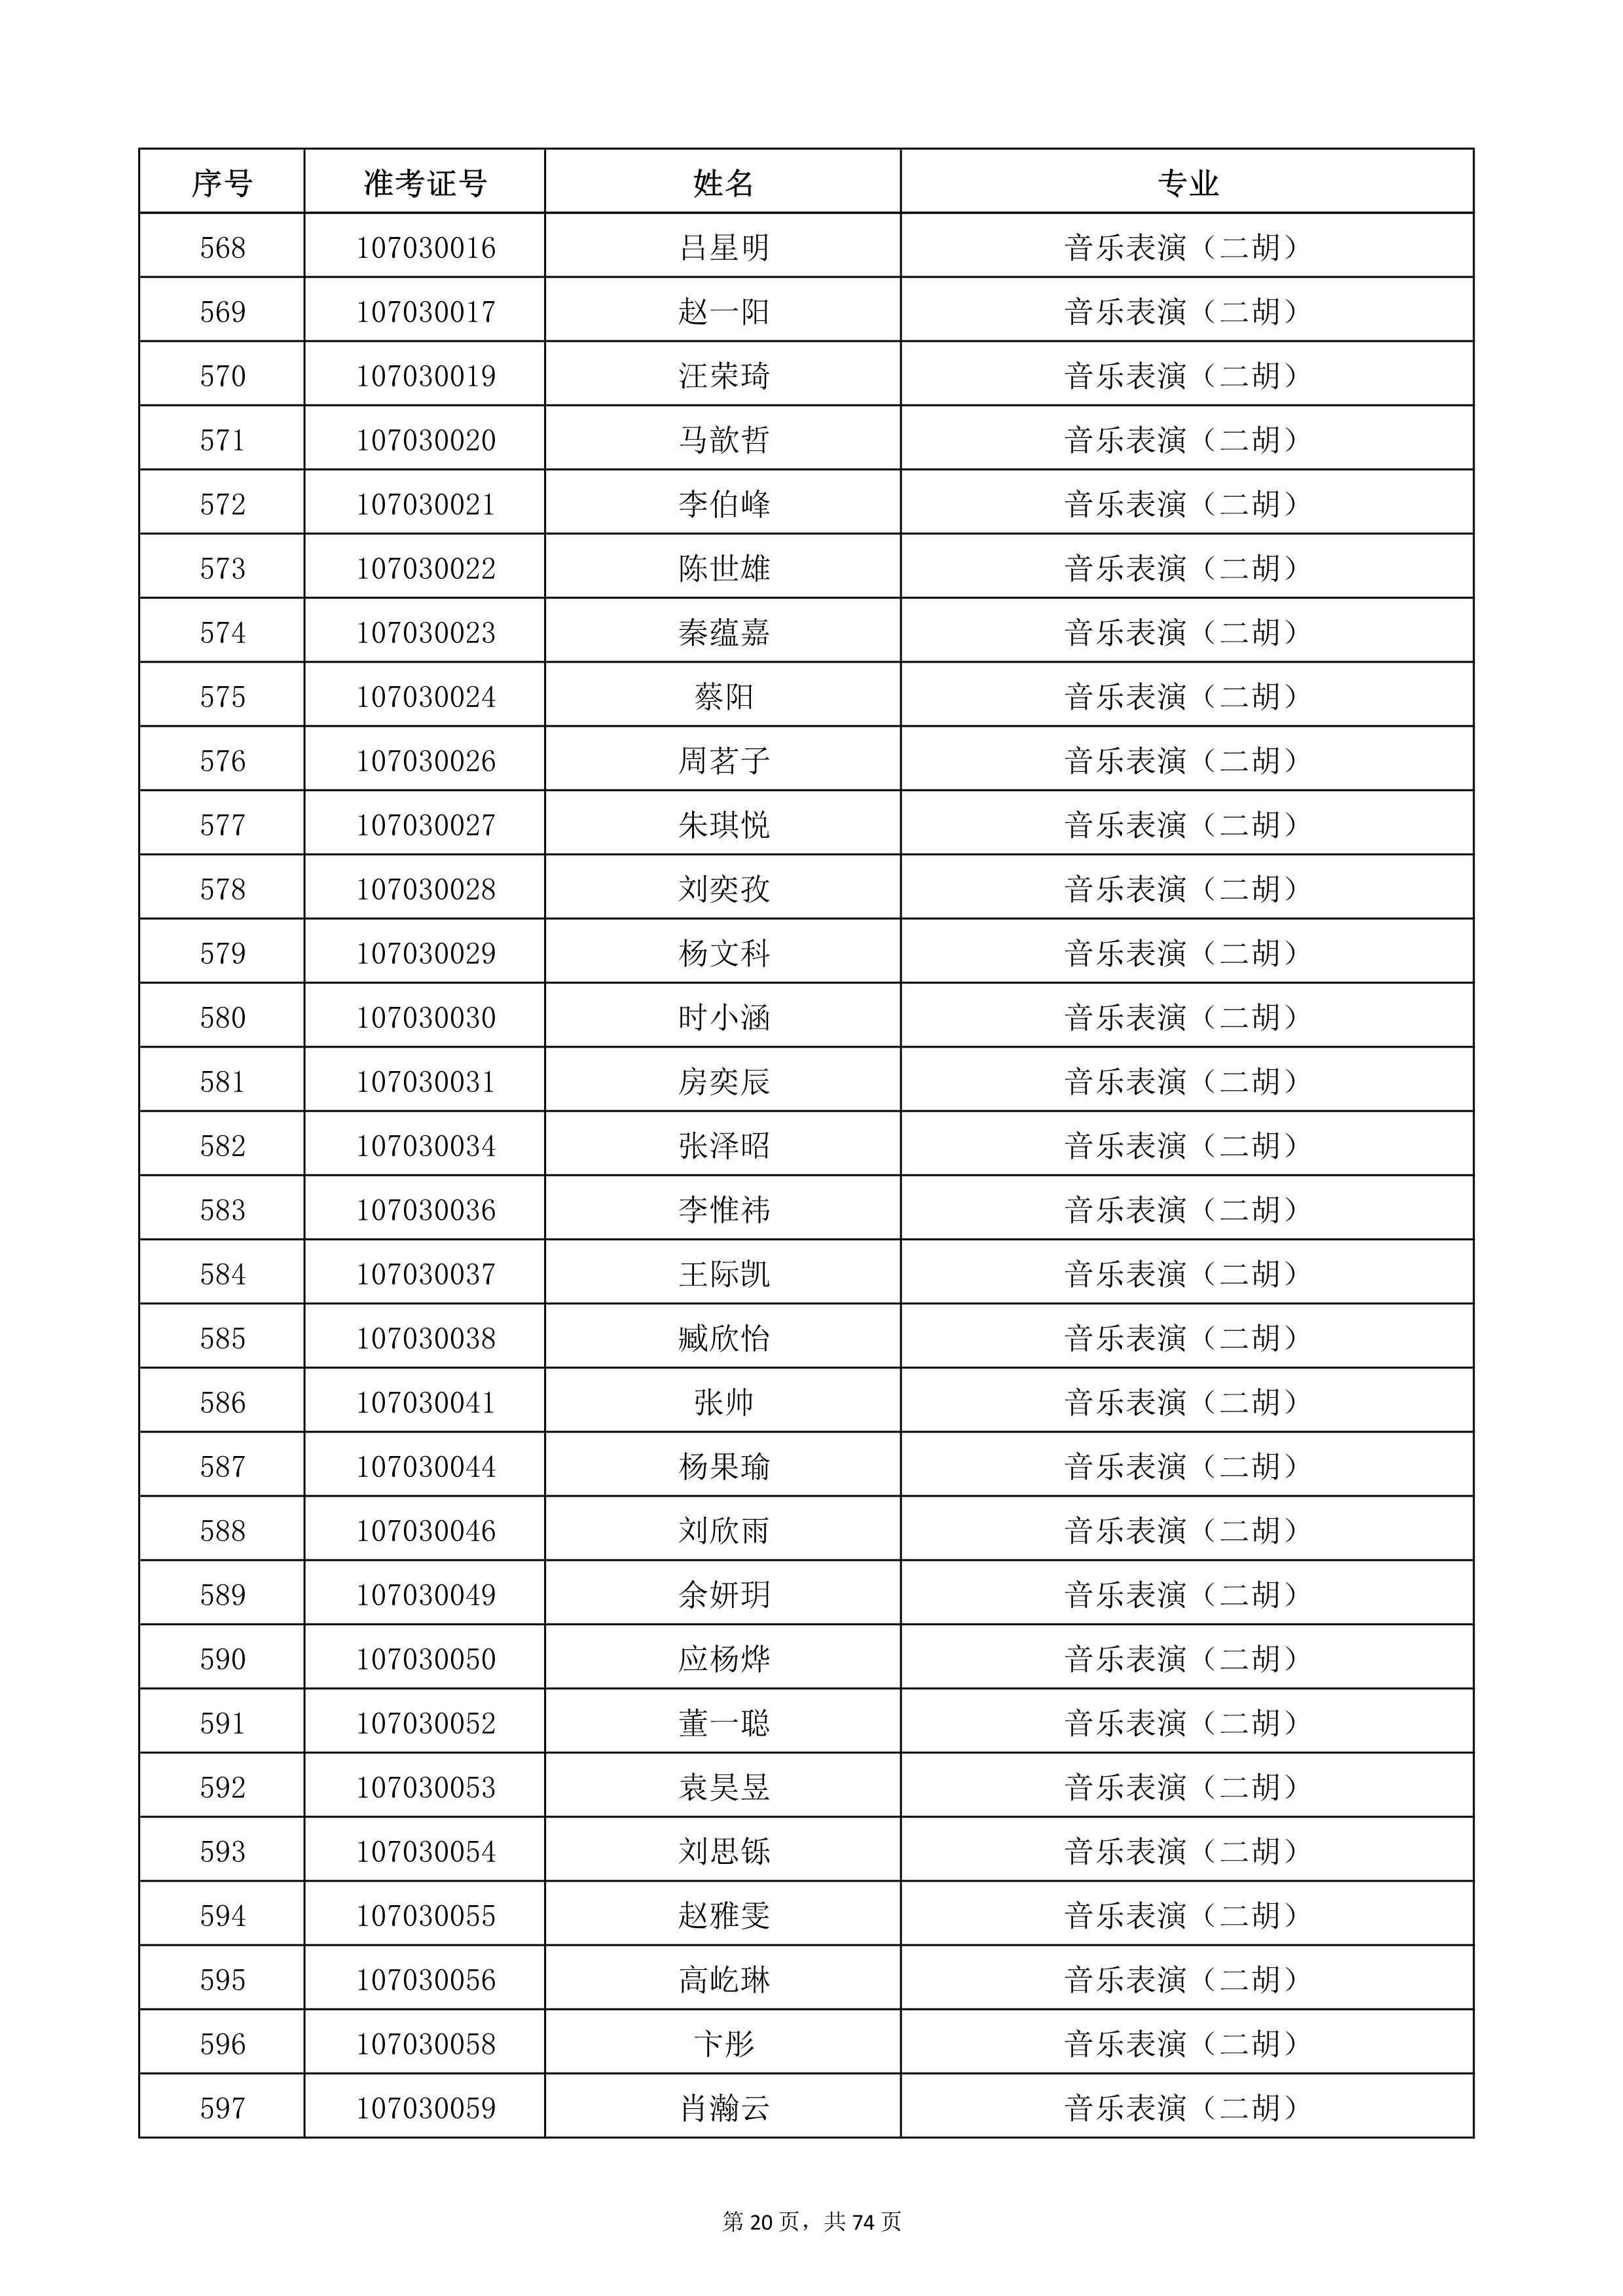 天津音乐学院2022年本科招生考试复试名单_20.jpg